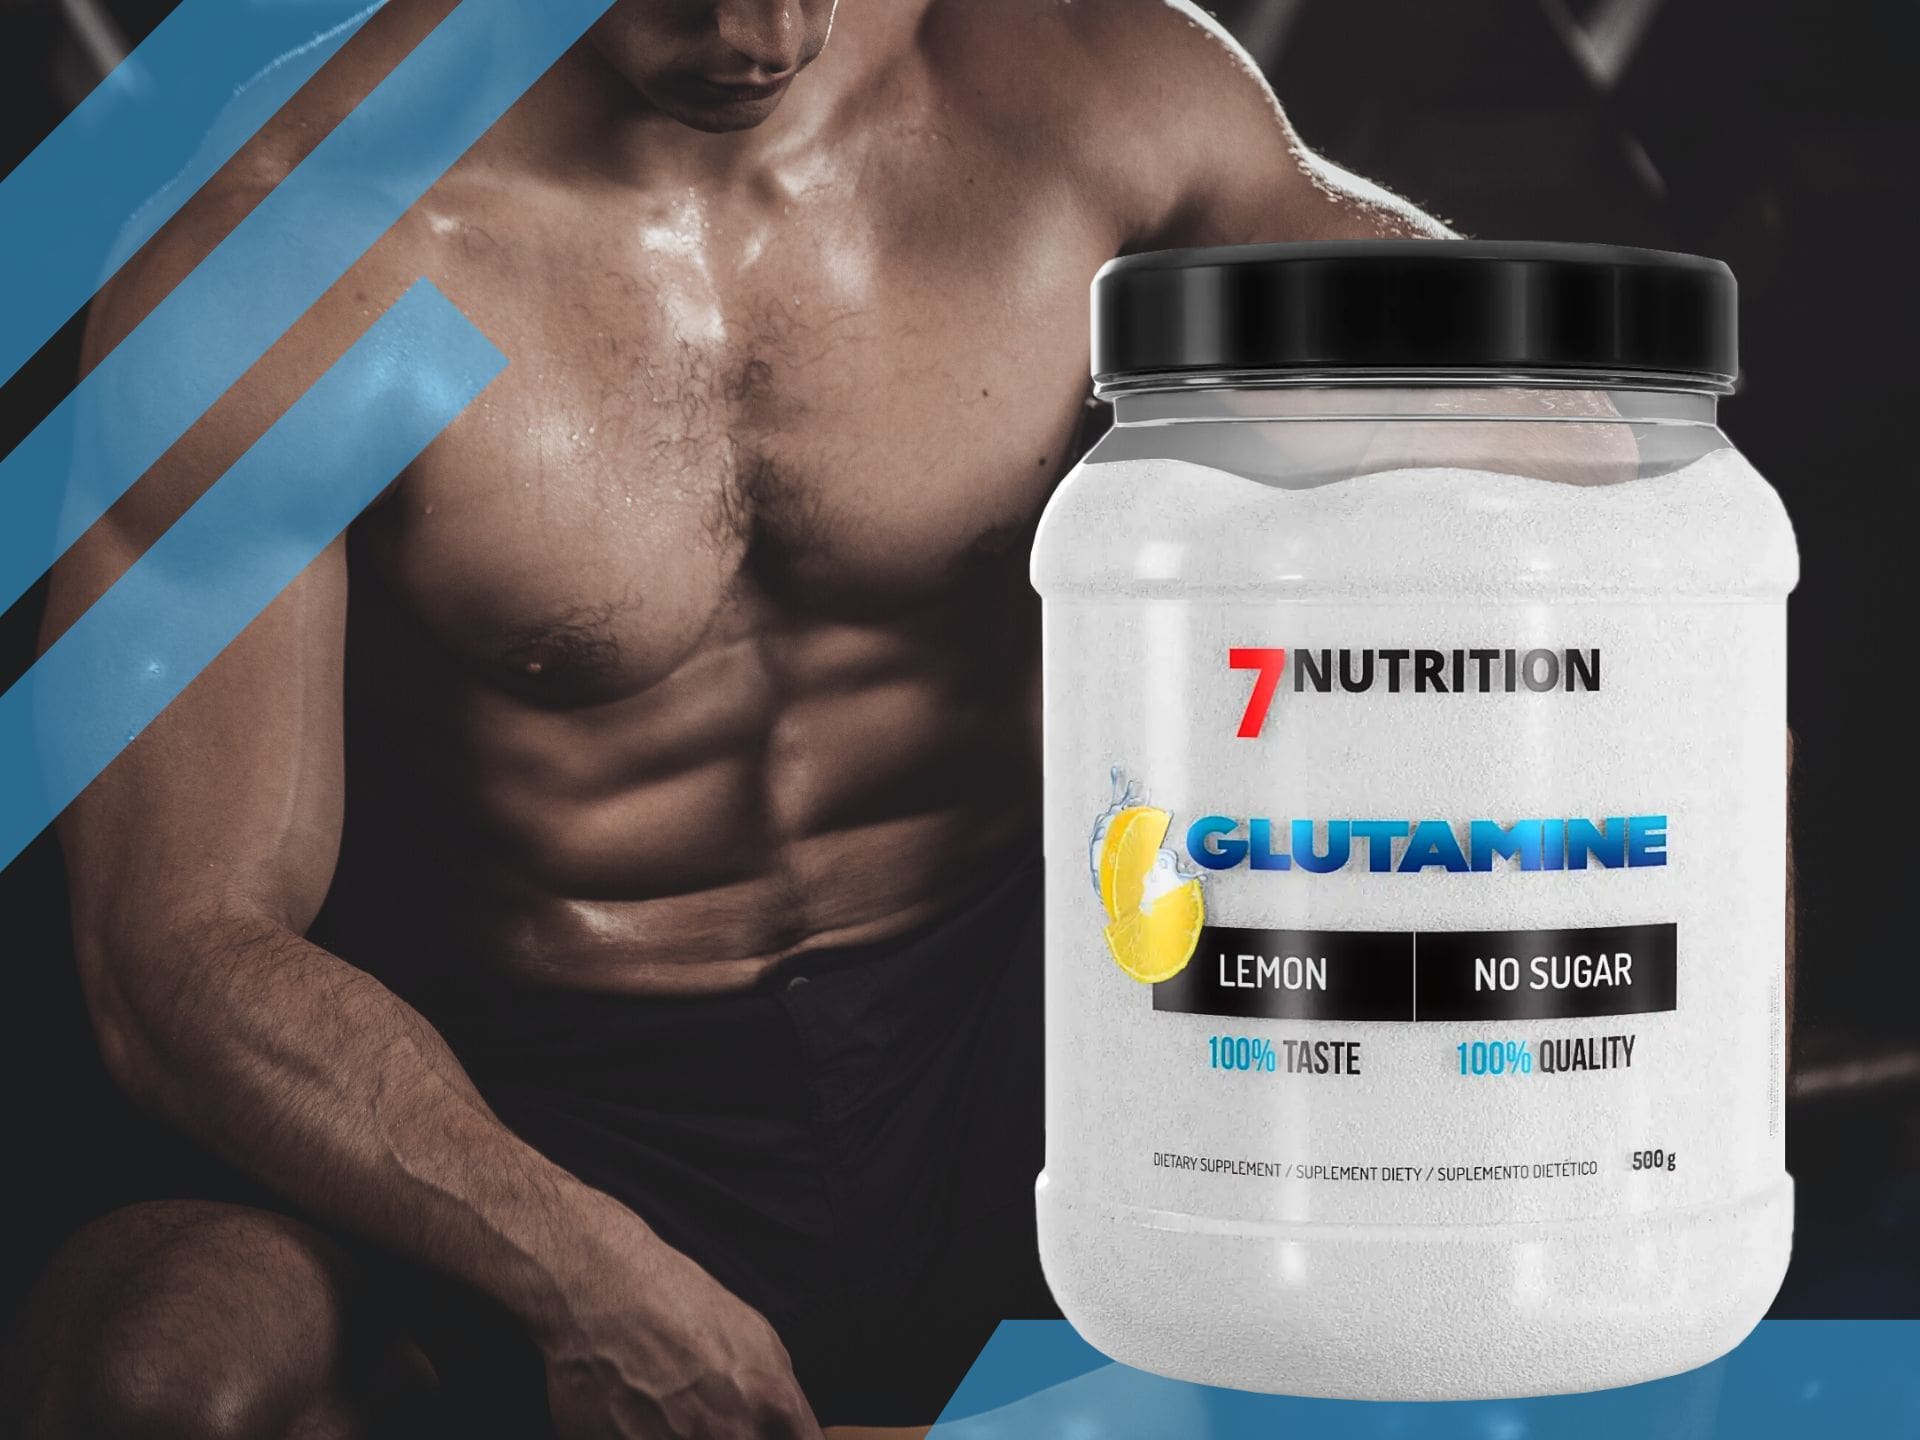 7NUTRITION Glutamine - 500g - Lemon post workout